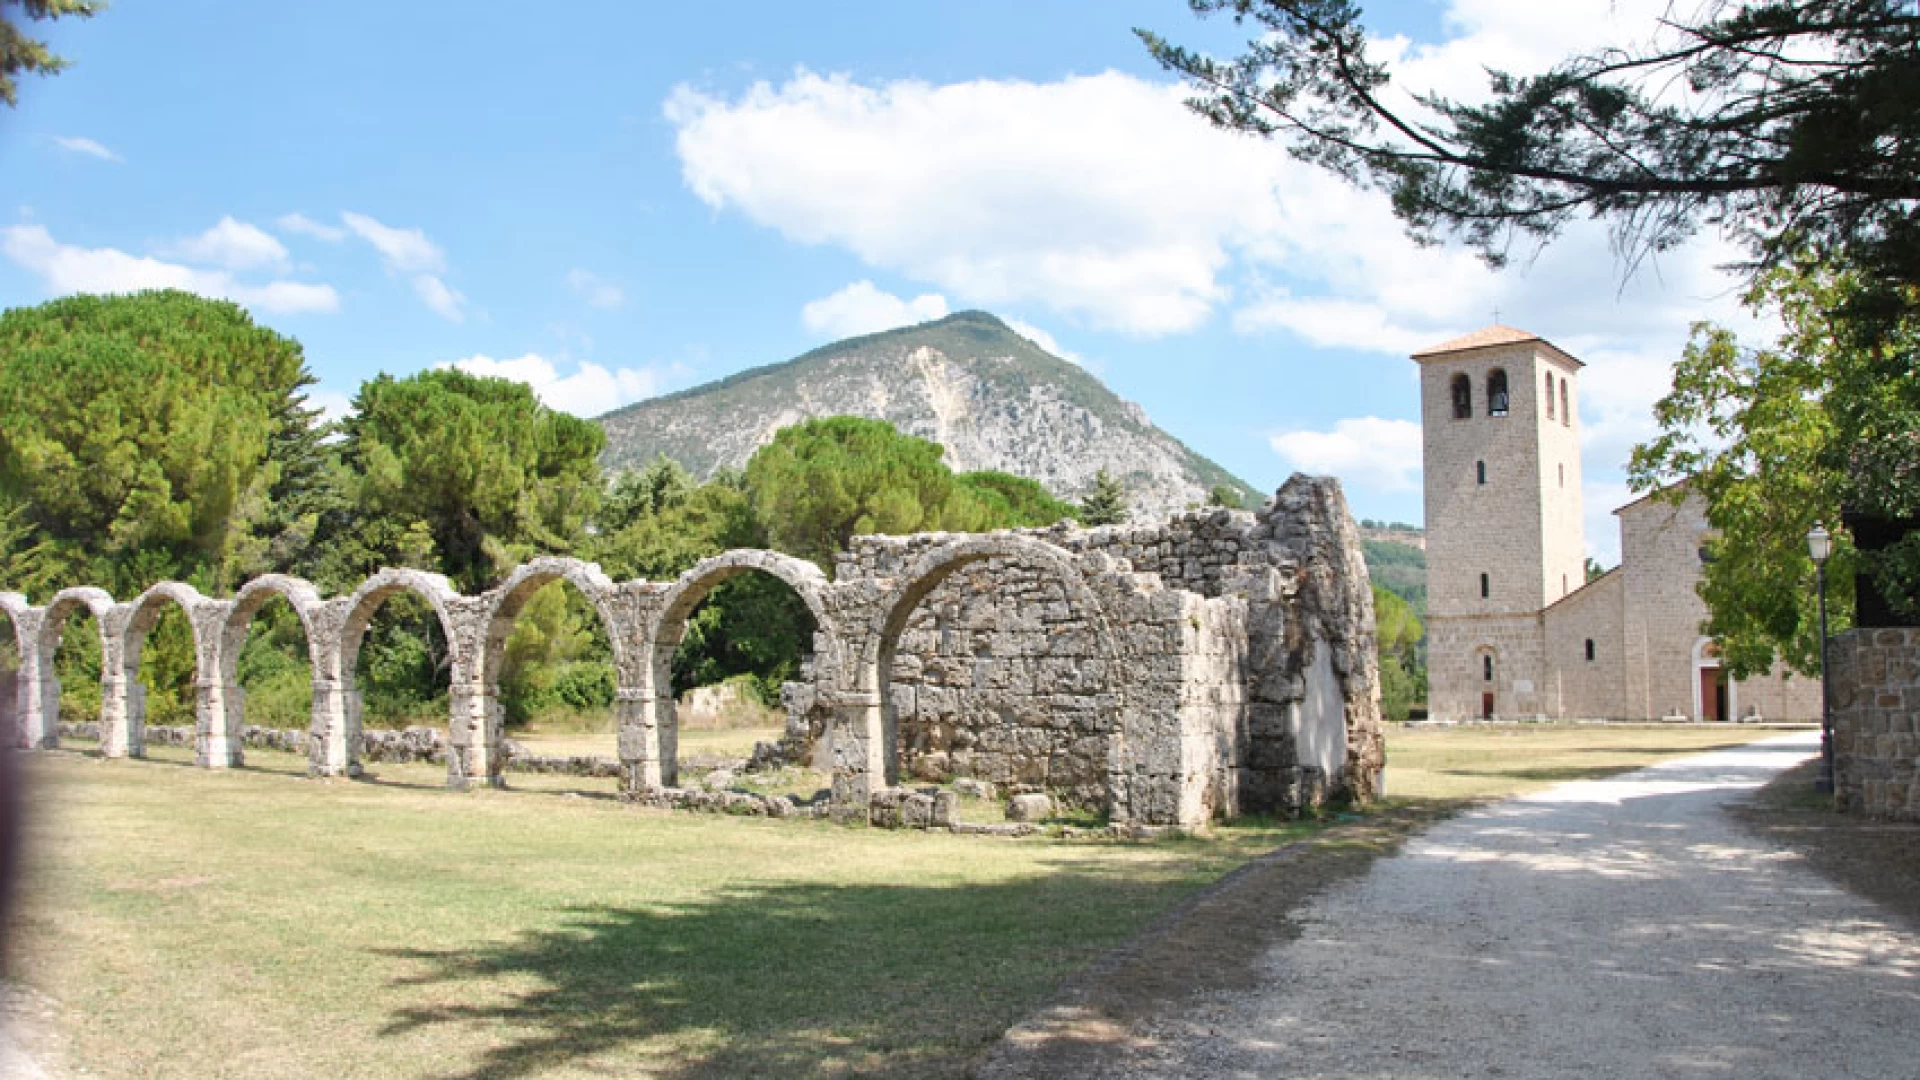 Parco storico-archeologico dell’Abbazia di San Vincenzo al Volturno. L’itera prosegue in quarta commissione regionale.